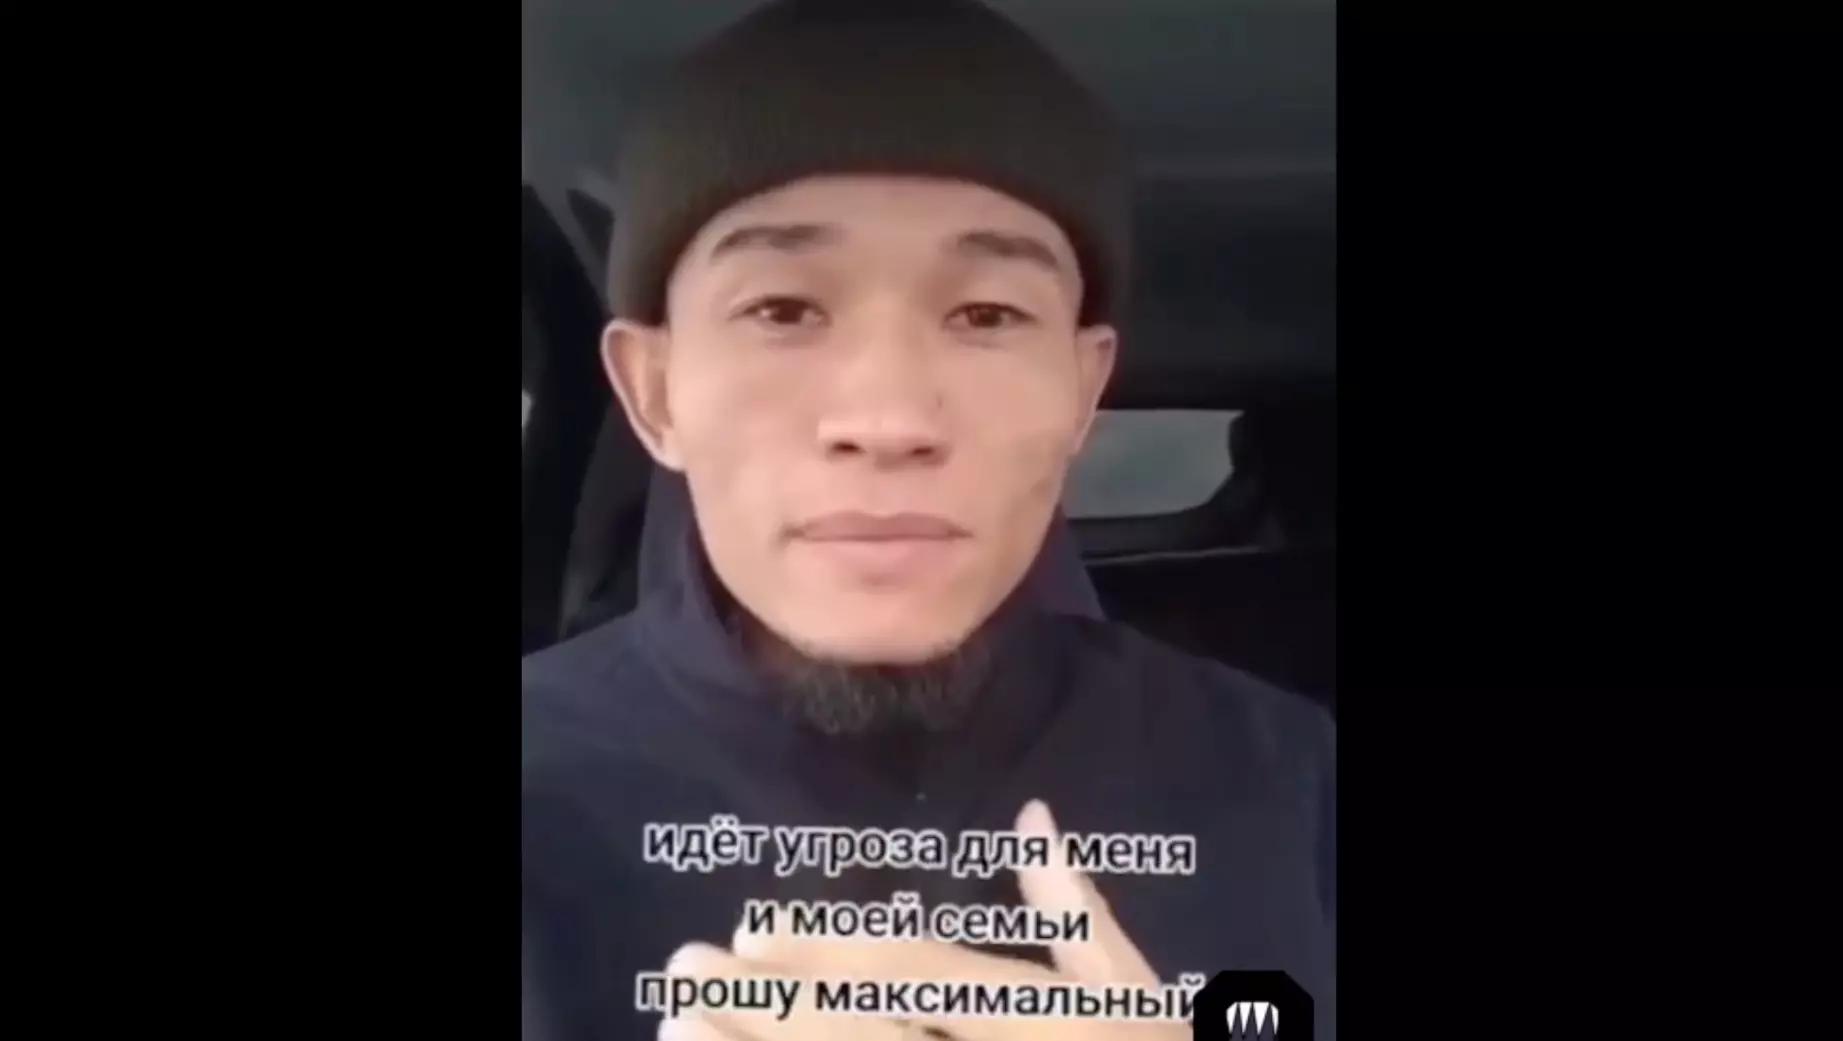 Блогер из Казахстана стал получать угрозы после вызова на бой сына главы Чечни